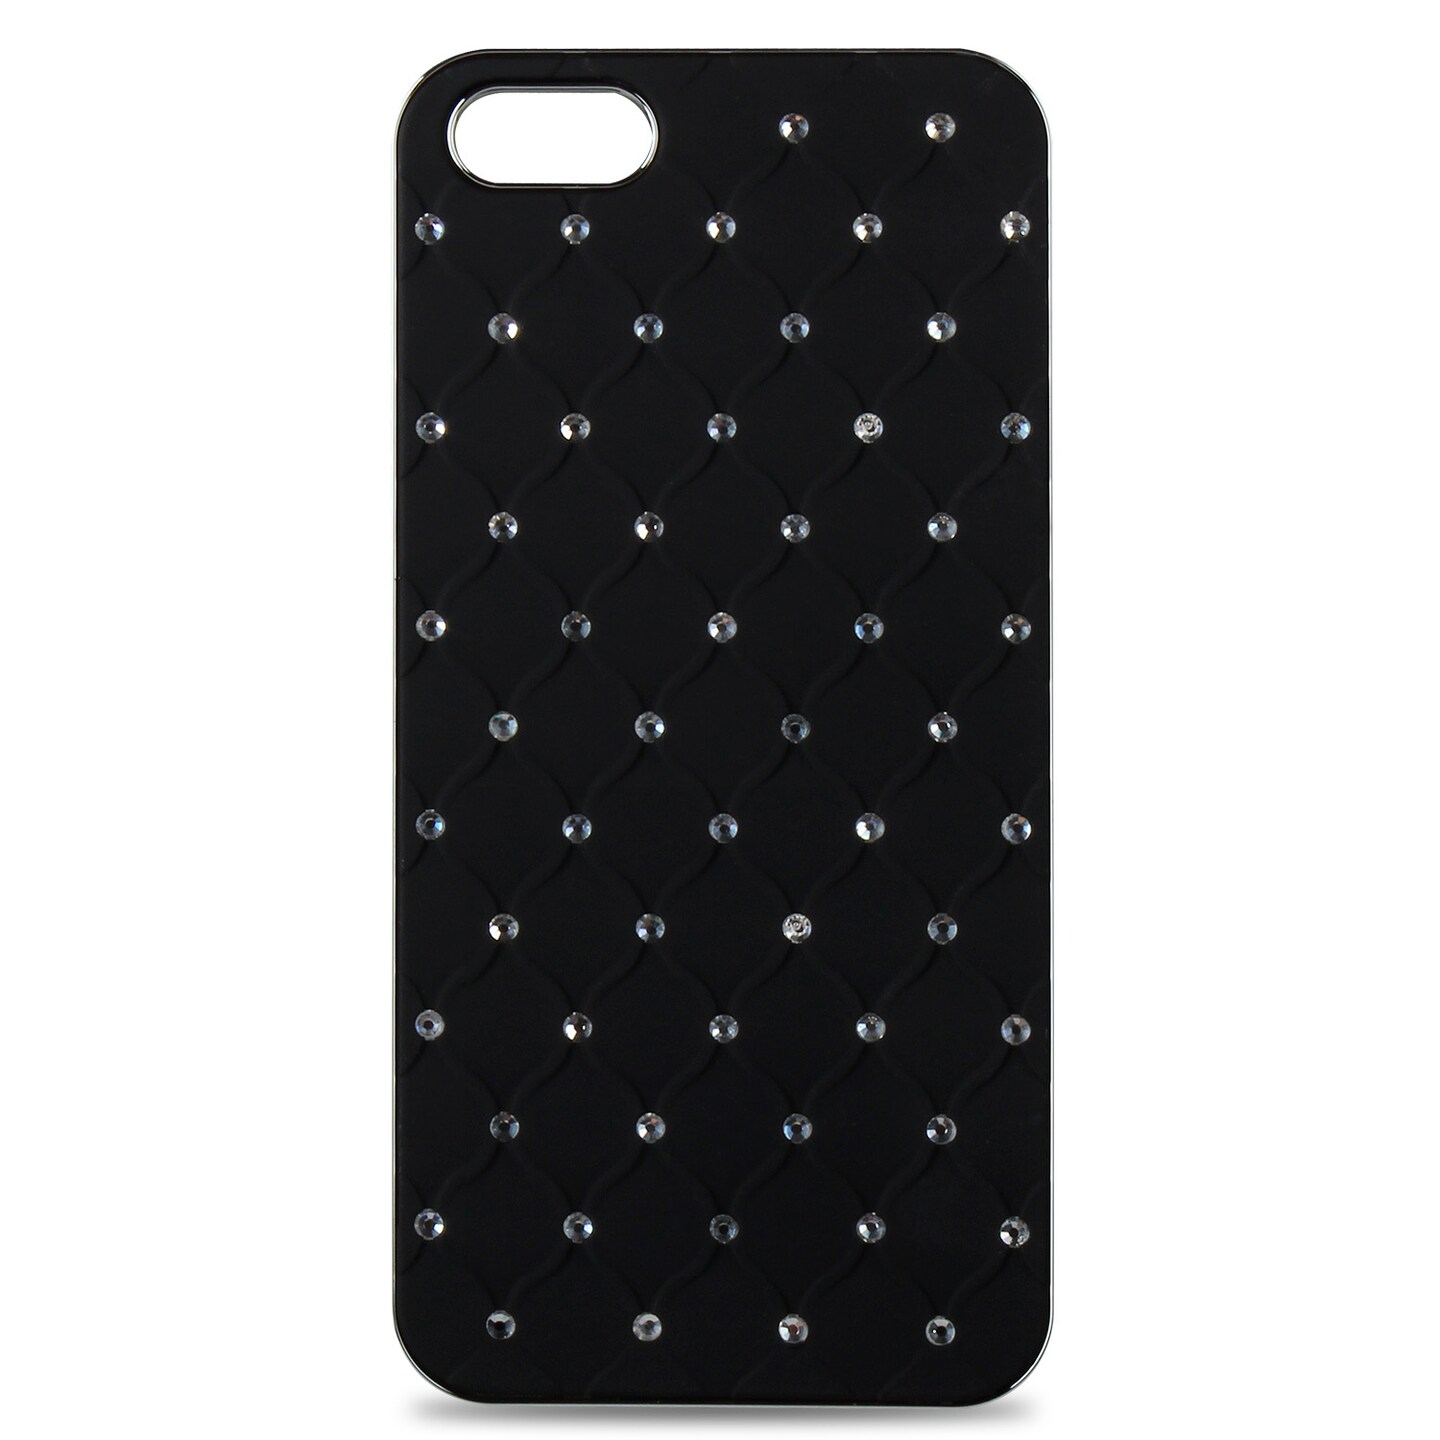 iphone 4 diamond cases